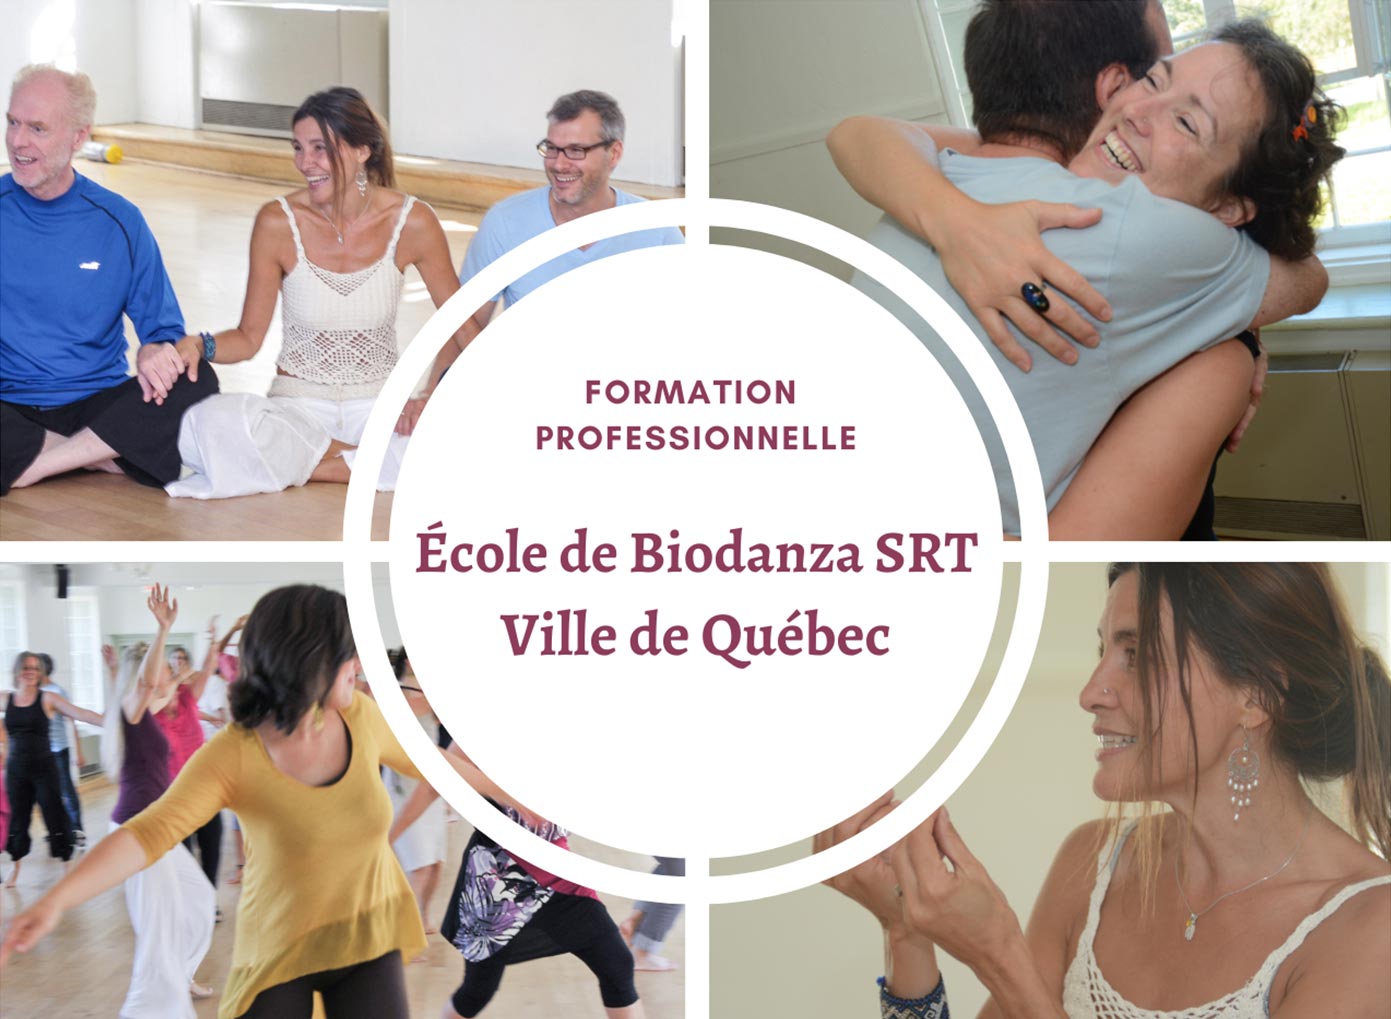 Formation Professionnelle - École de Biodanza SRT Ville de Québec